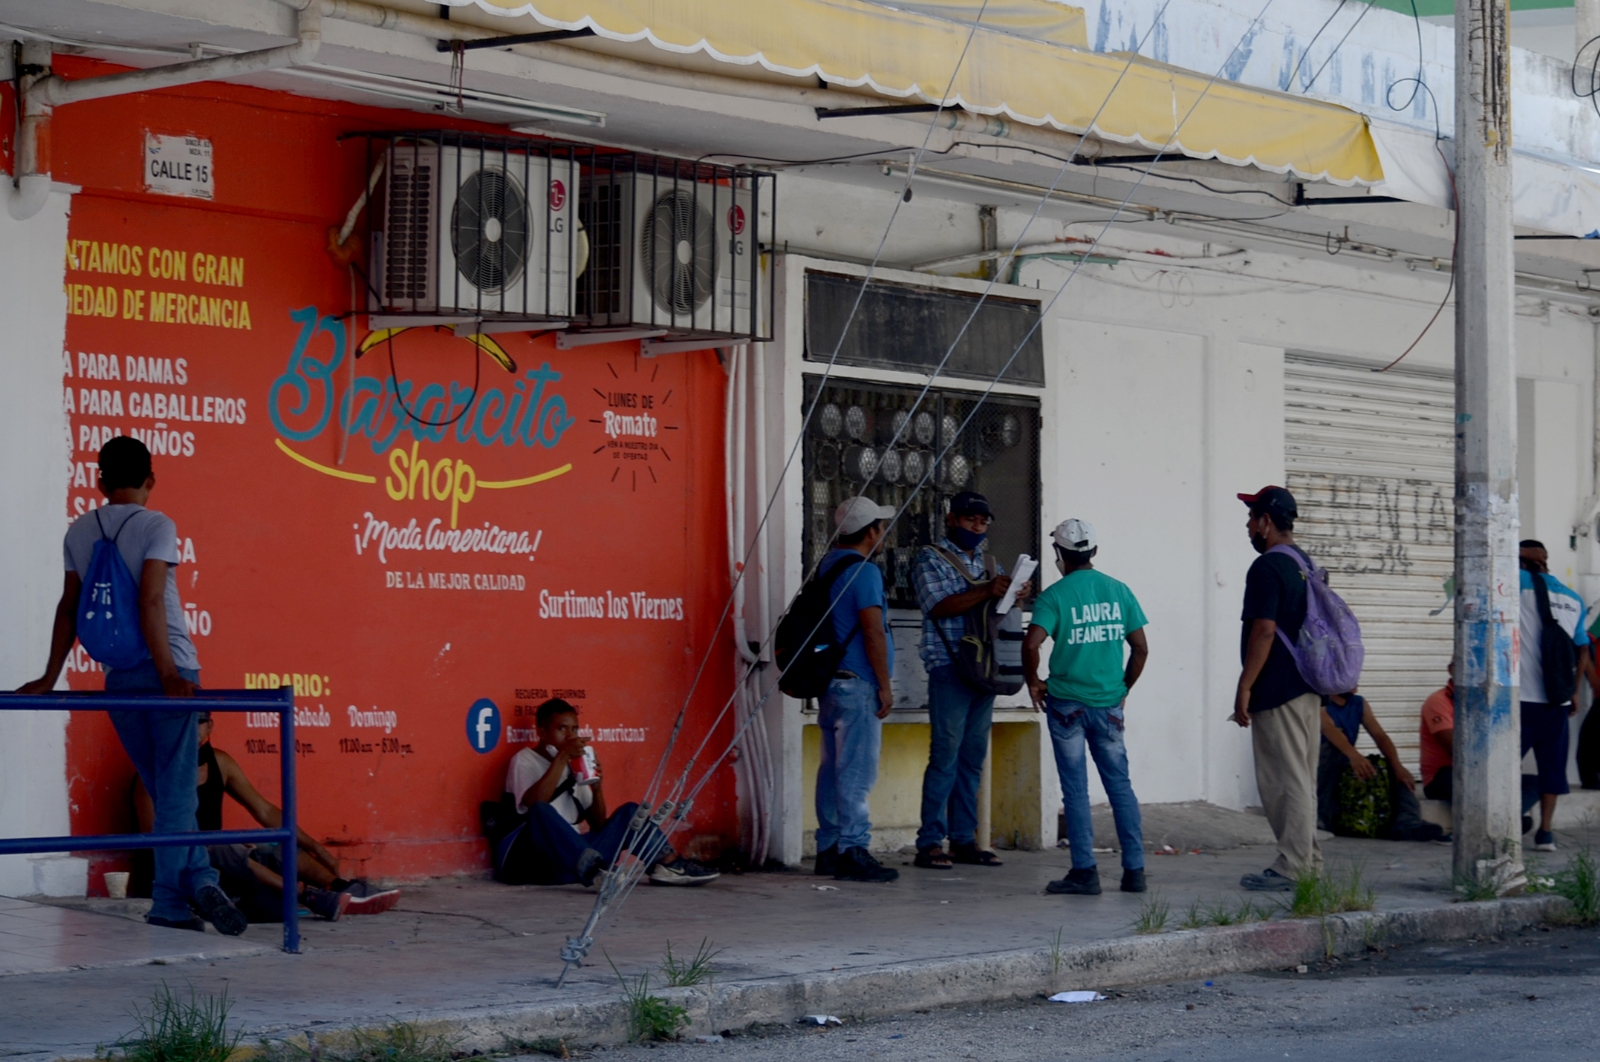 Factores económicos y culturales influyen en los suicidios: especialista de Quintana Roo